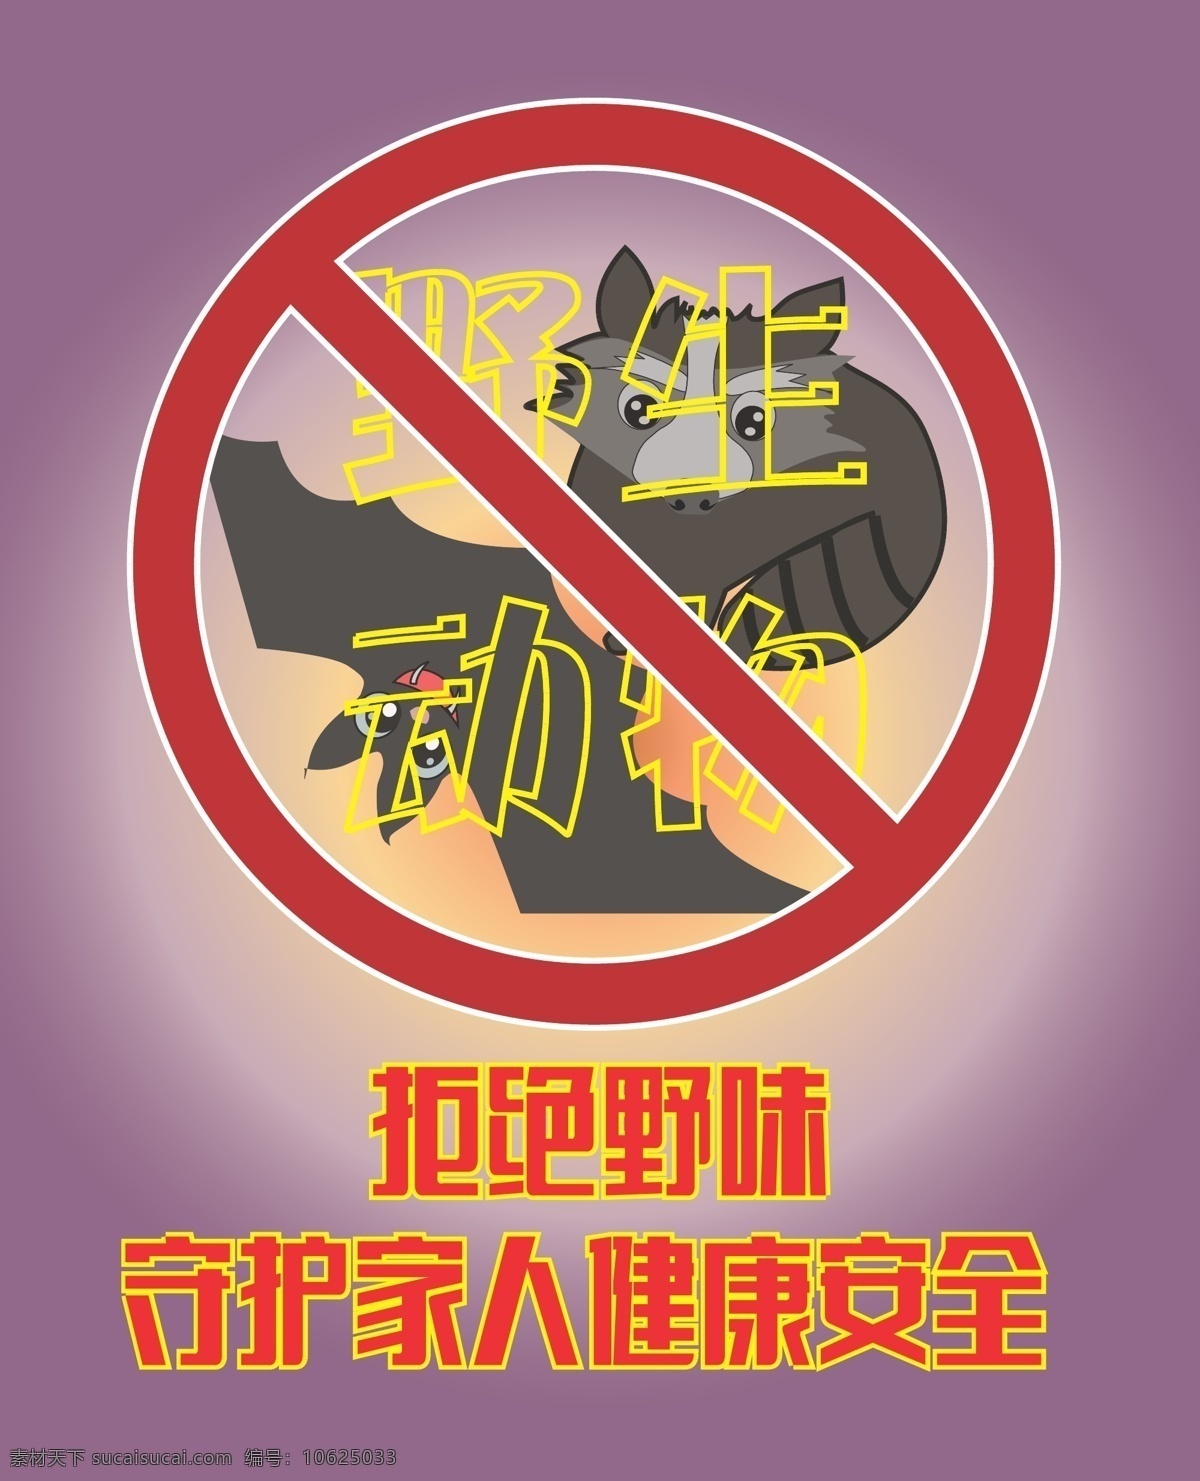 拒绝 野味 守护 家人 健康 安全 2020 肺炎 ncp 武汉 冠状 病毒 展板模板